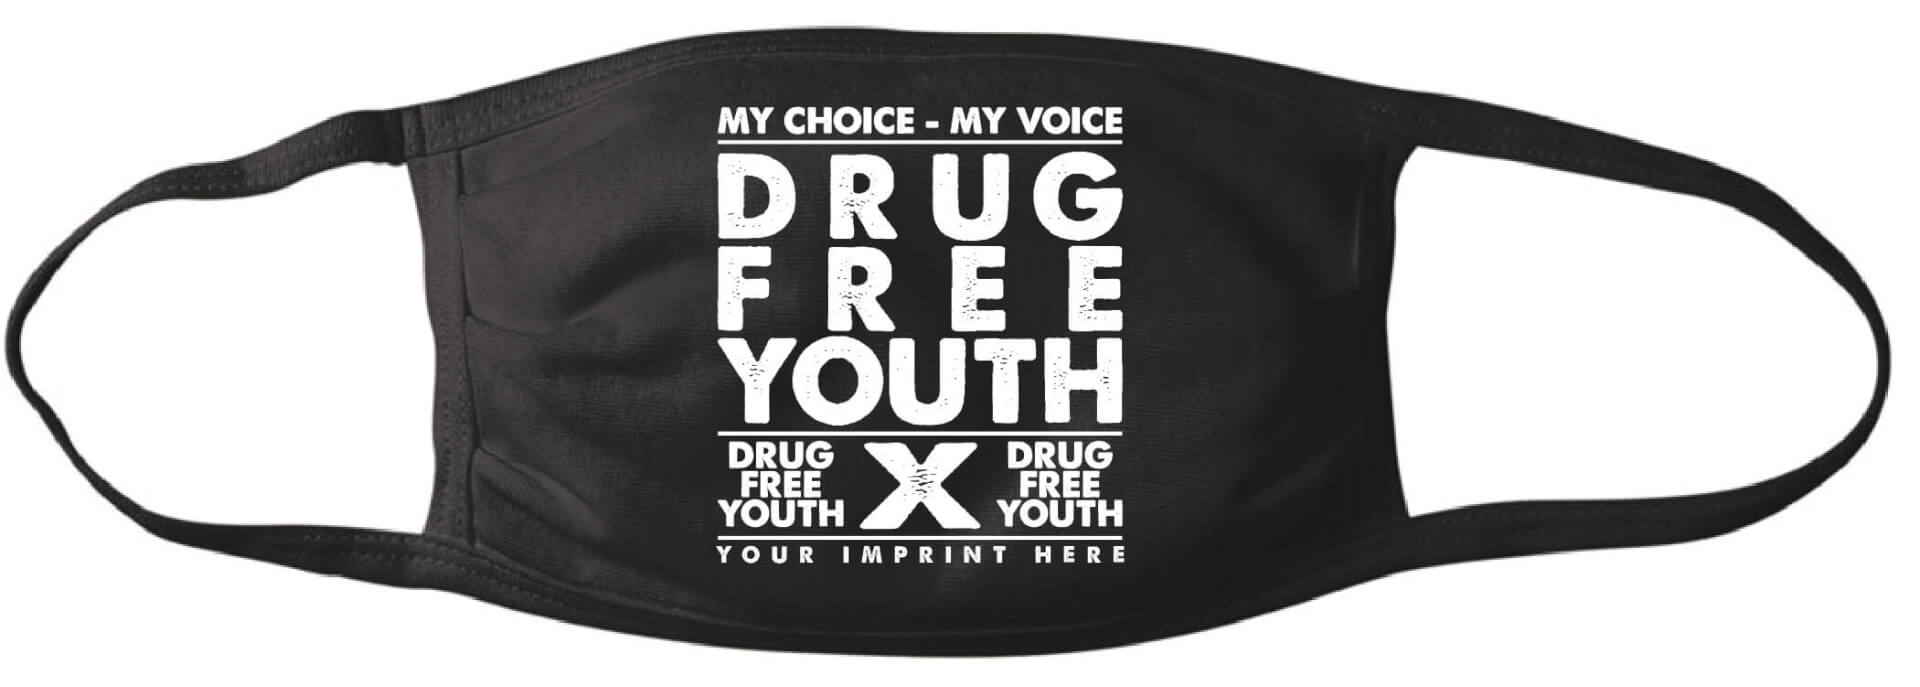 Drug Free Youth Mask - Customizable